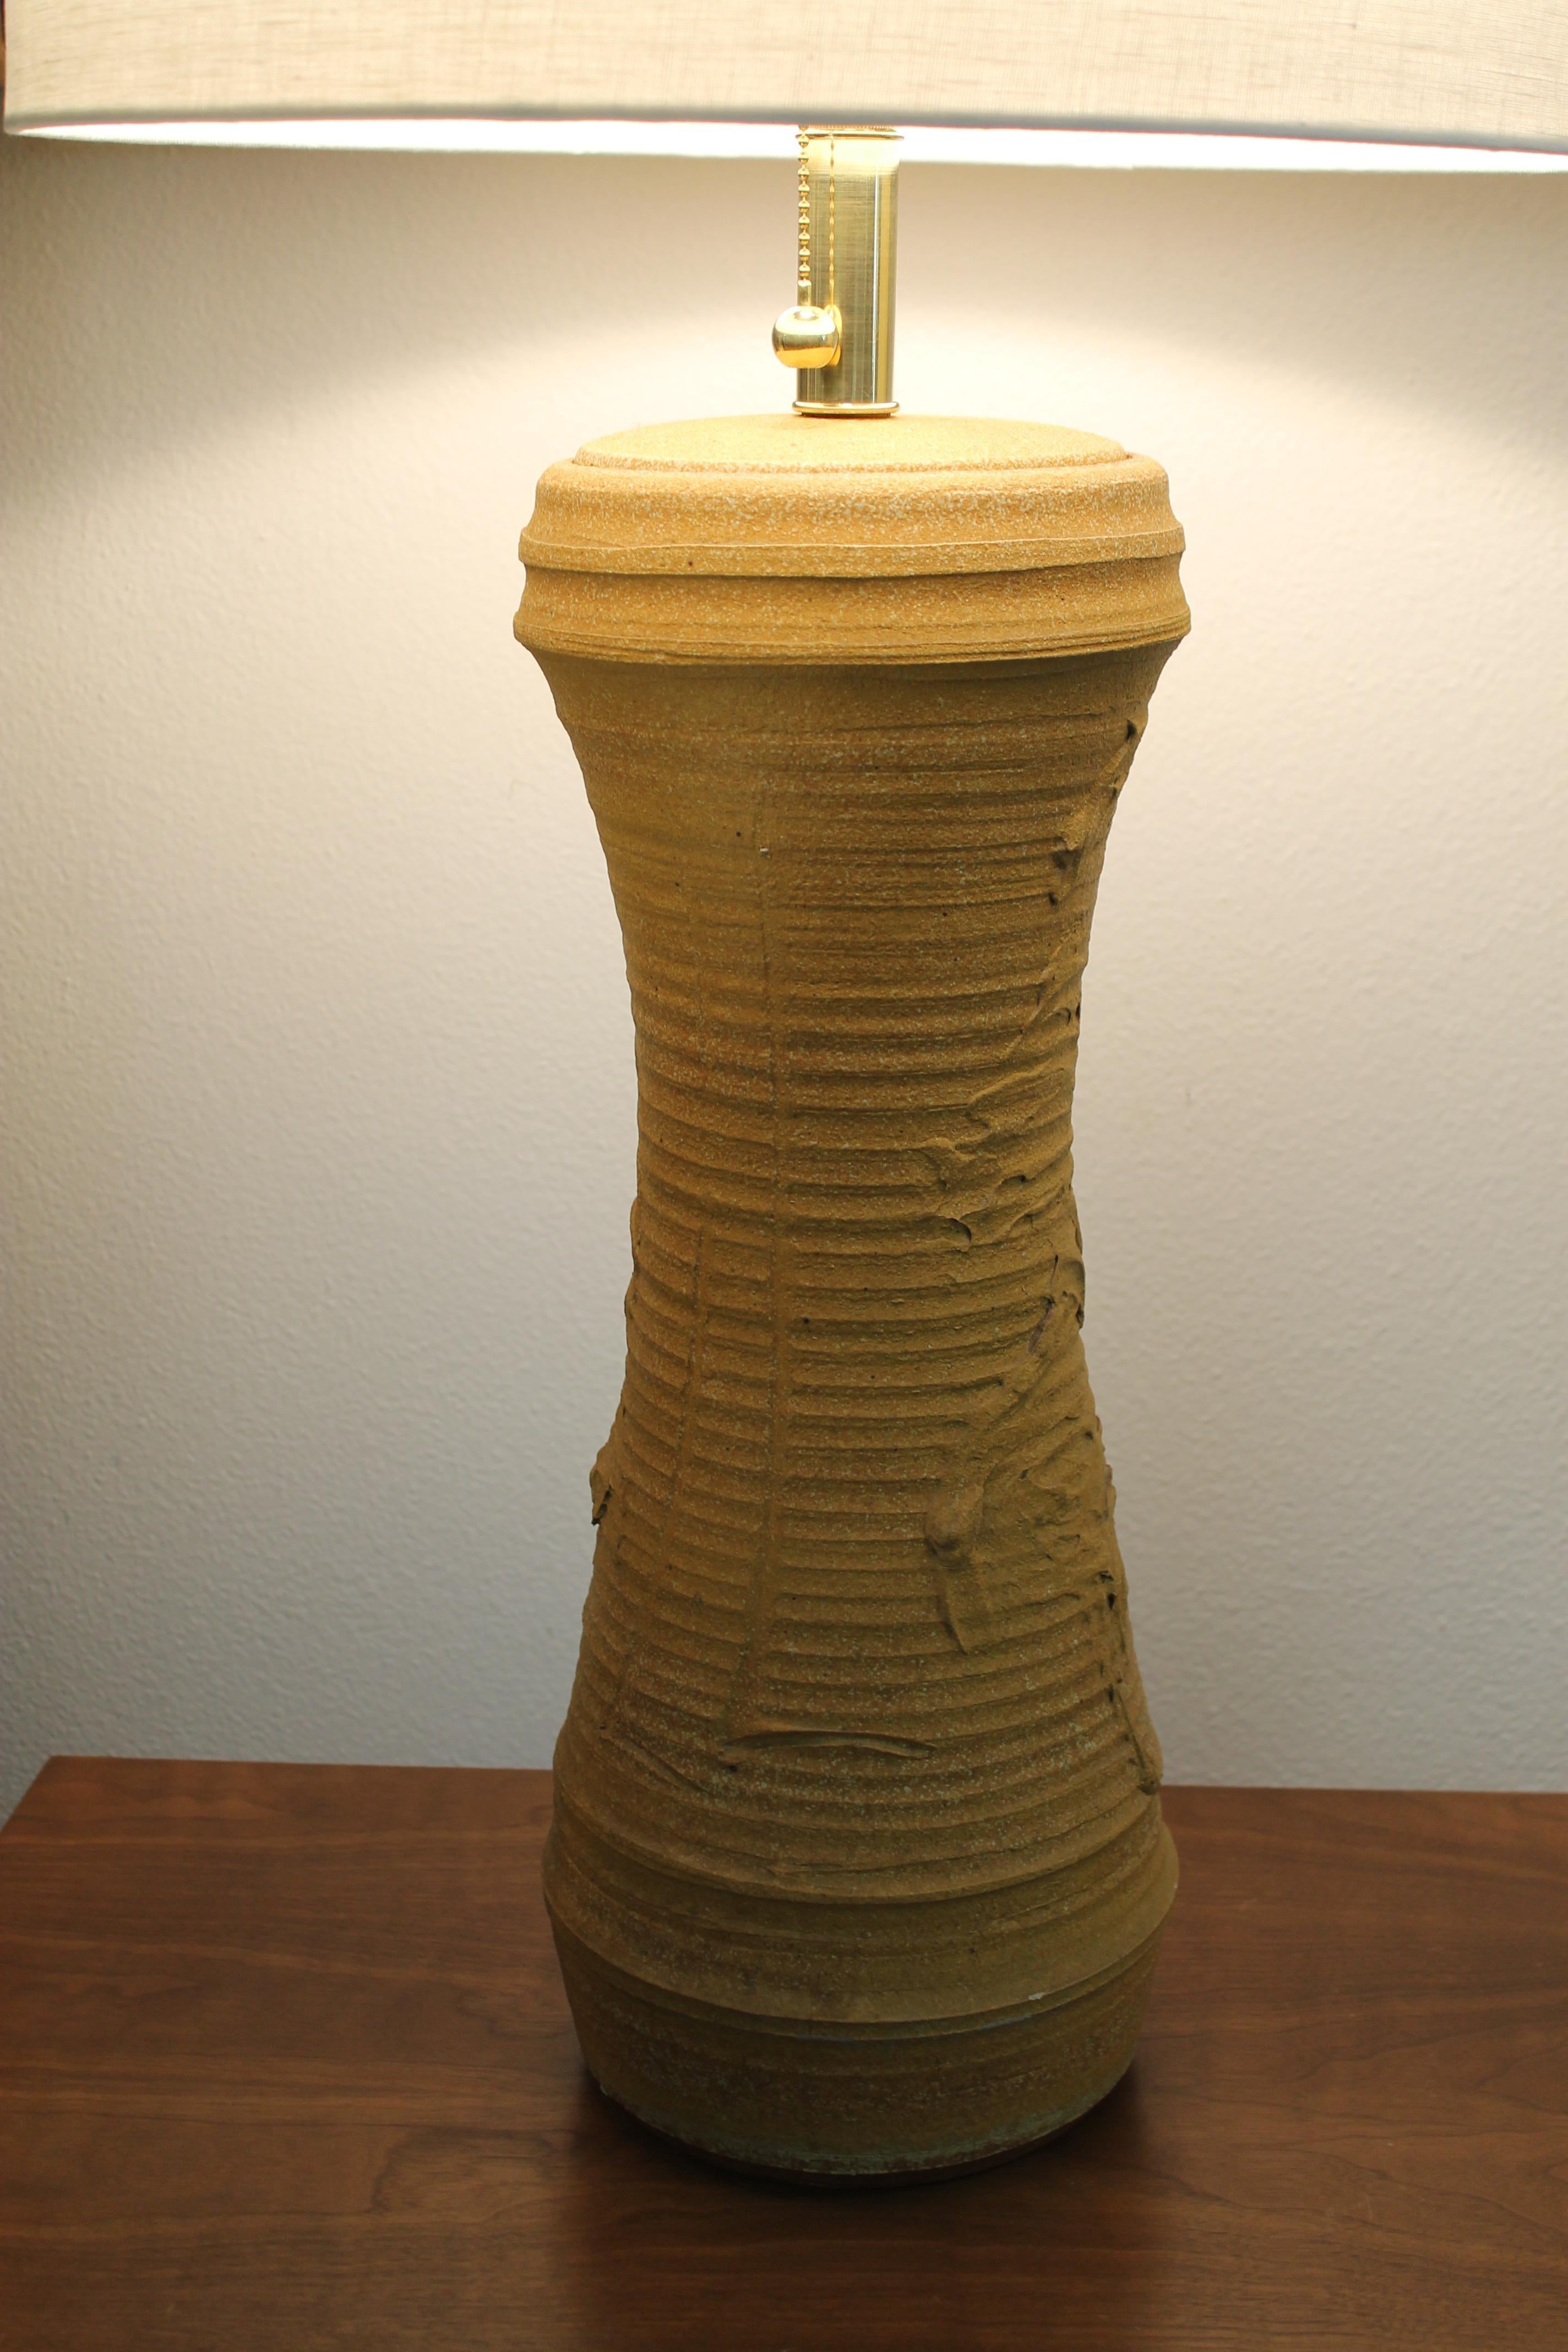 Lampe en céramique de Bob Kinzie pour l'Affiliated Craftsmen Lamp Company de Costa Mesa, CA.  La portion en céramique mesure 21 pouces de haut et 8 pouces de diamètre. La hauteur totale de la base au bas de la prise est de 25